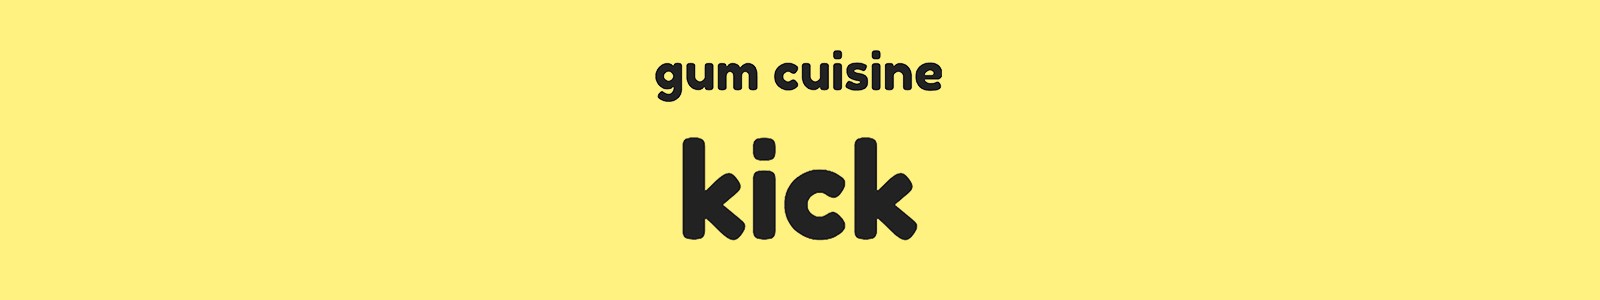 Gum Cuisine Kick